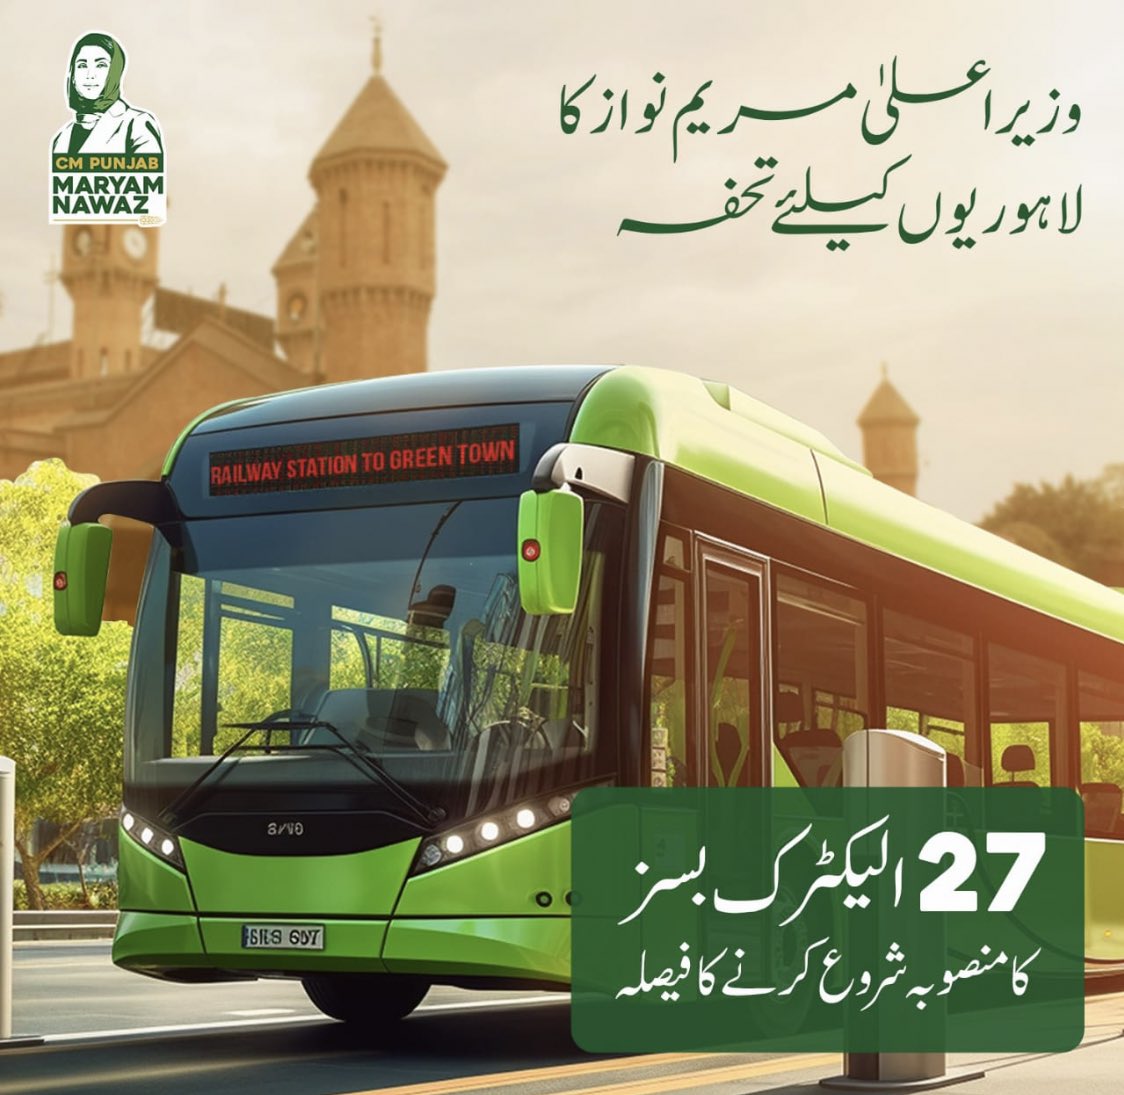 وزیراعلیٰ مرہم نواز کا لاہوریوں کیلئے تحفہ ۔ 27 الیکڑک بسز کا منصوبہ شروع کرنے کا فیصلہ 🙌